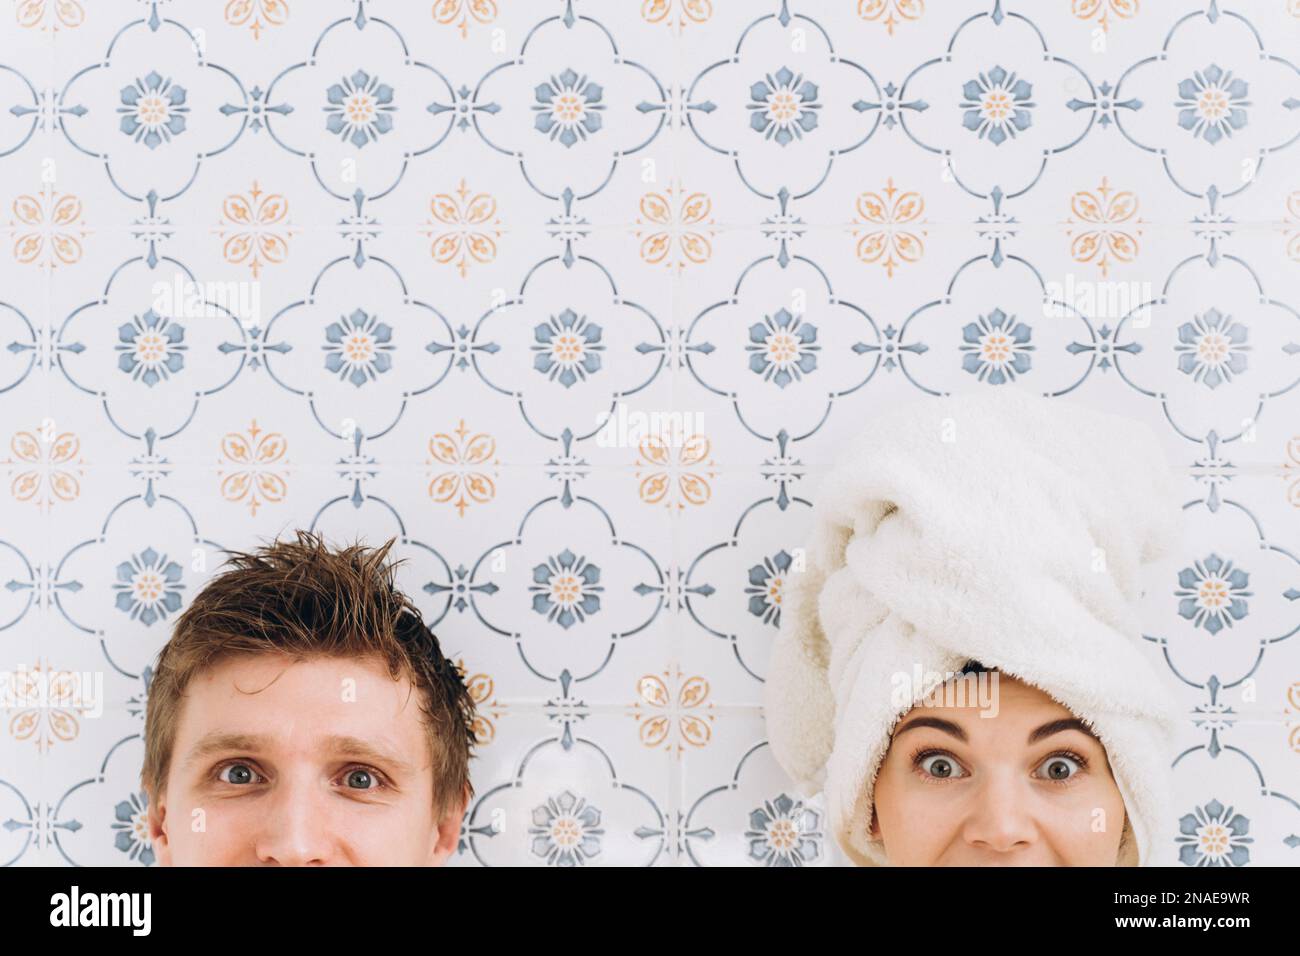 Un gars et une fille avec une serviette sur leur tête, surpris visages Banque D'Images